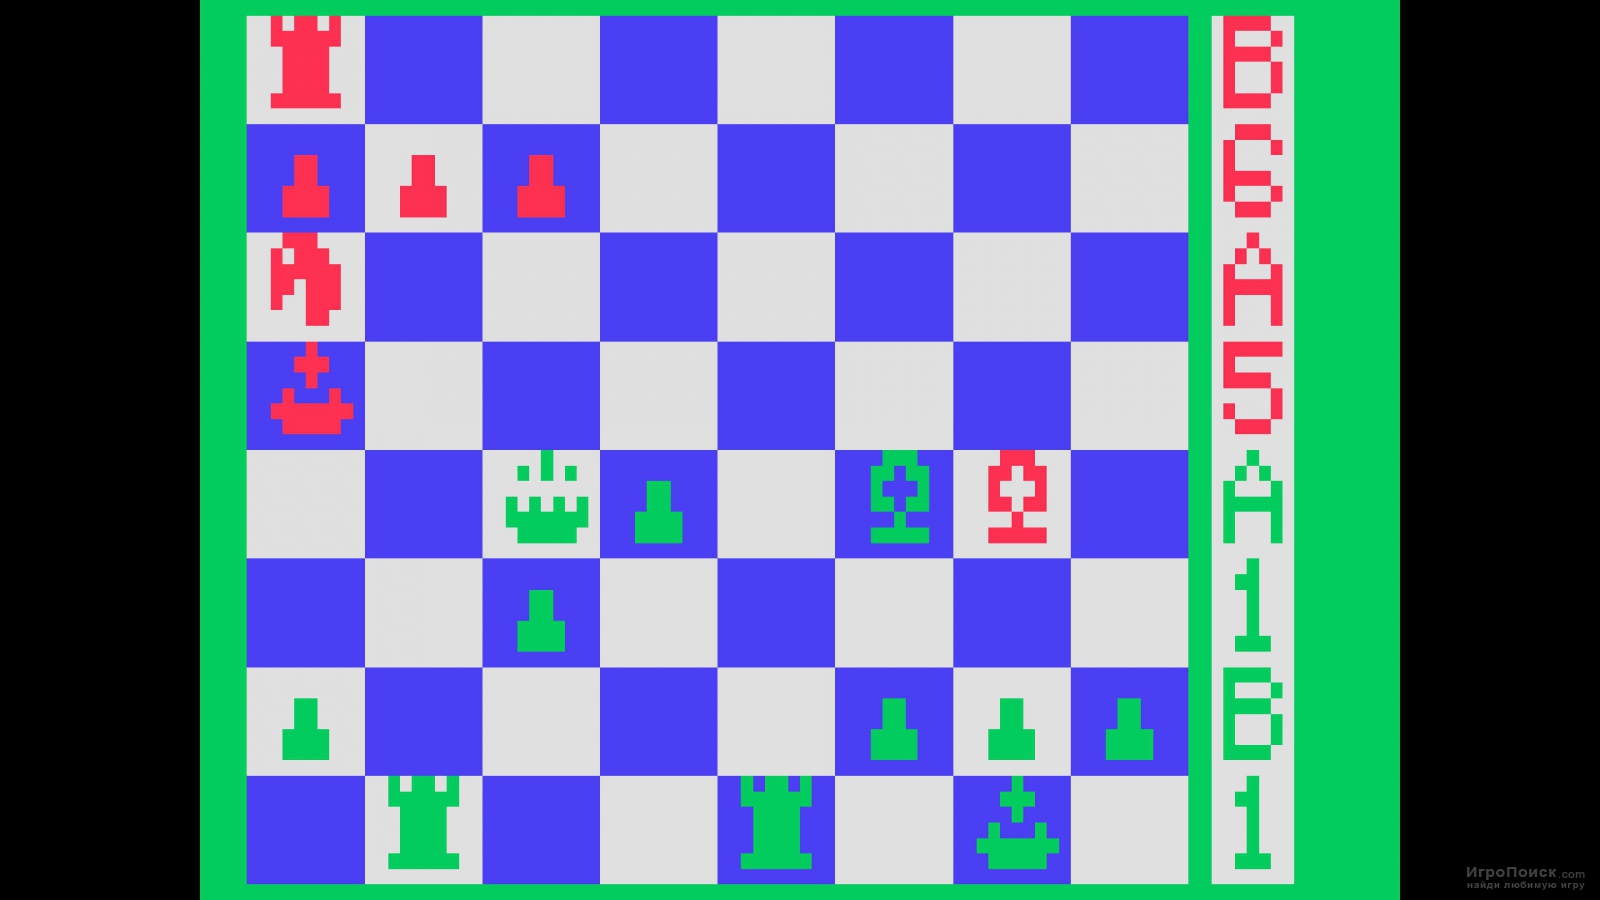    Schach